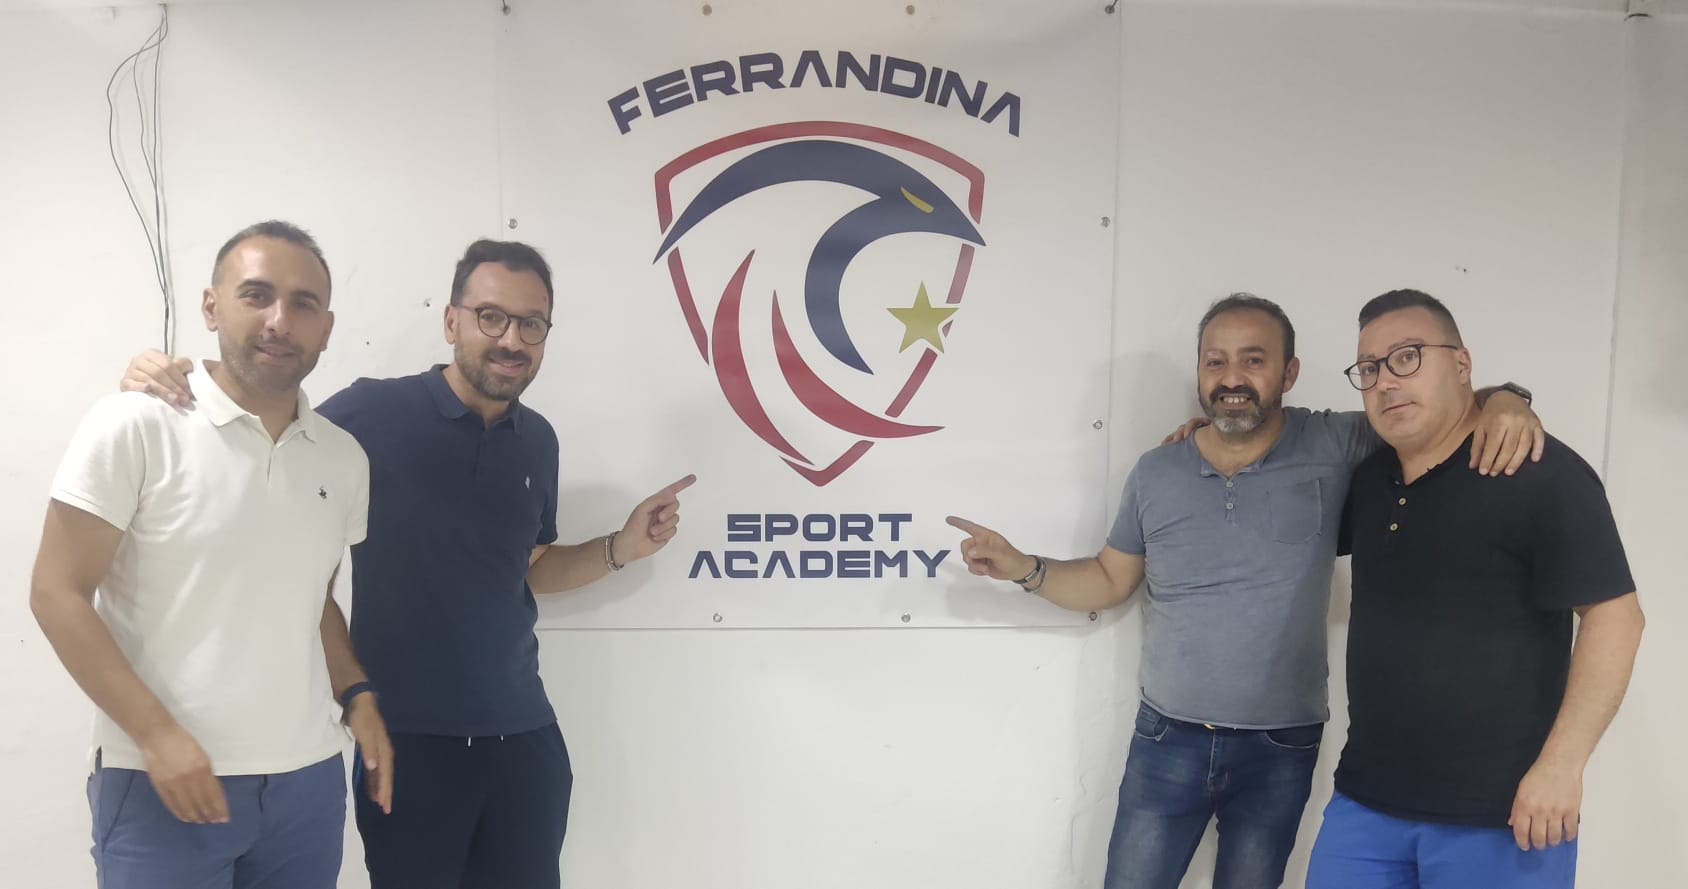 Nasce a Ferrandina l’A.S.D. “Ferrandina Sport Academy” e apre la stagione dei tornei estivi con il calcio a 7